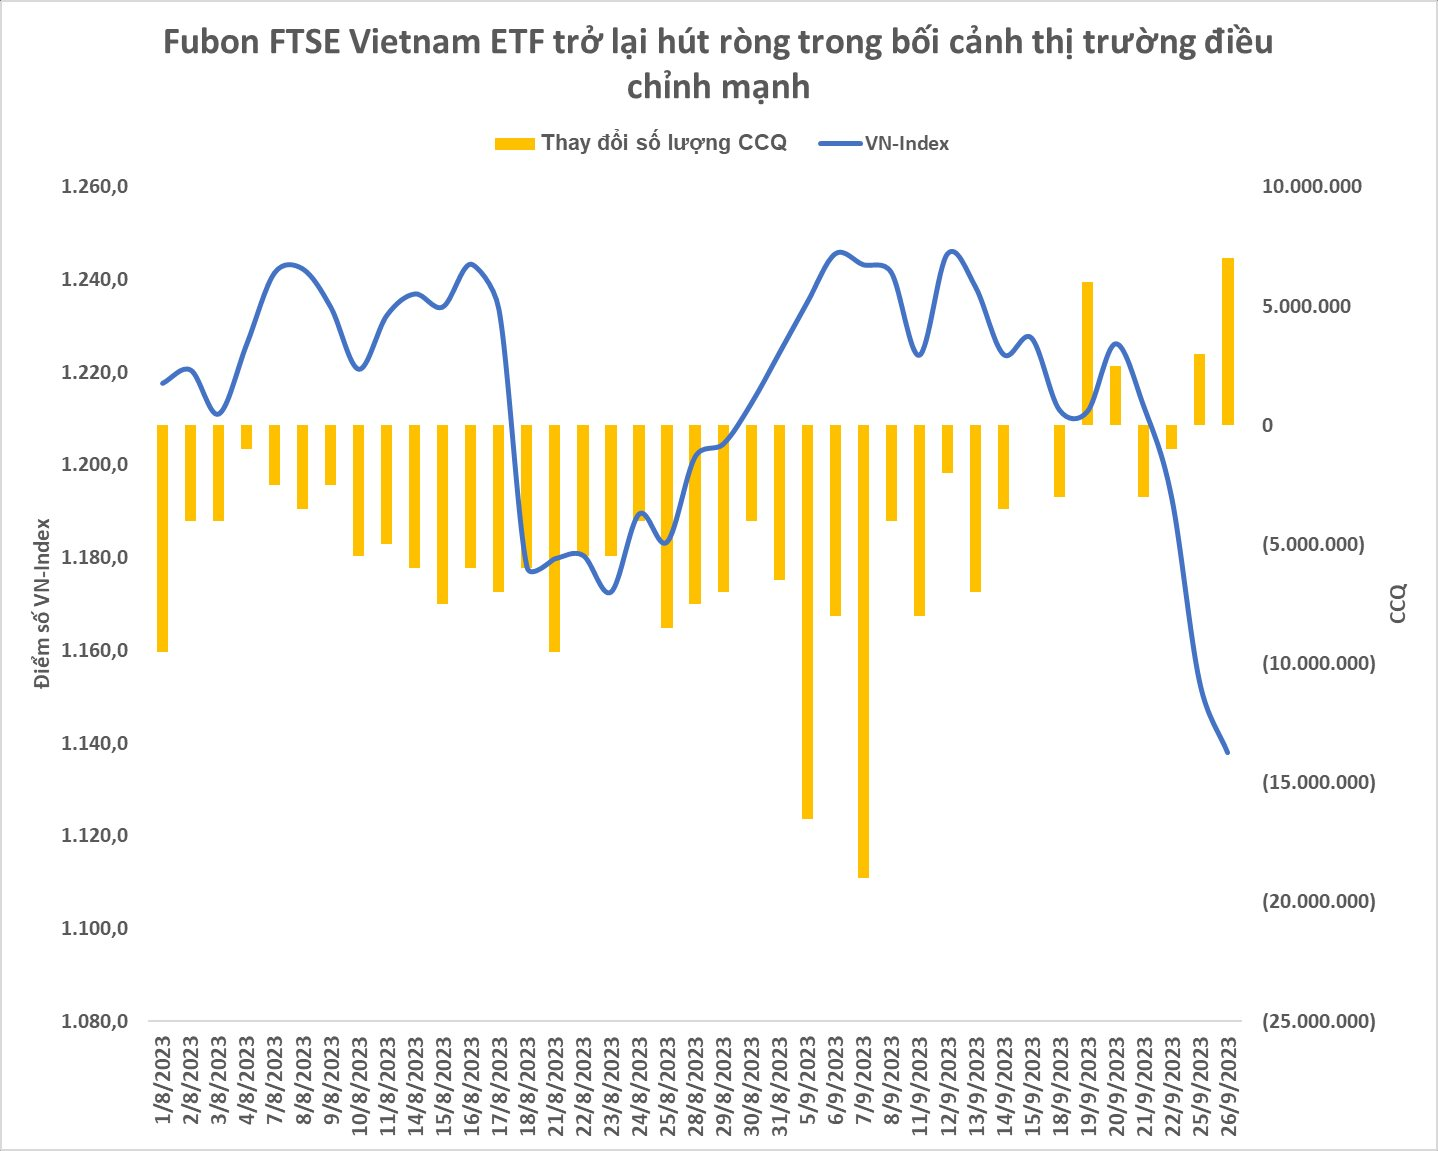 Fubon ETF trở lại mua cổ phiếu Việt Nam giữa lúc thị trường chỉnh mạnh, cổ phiếu nào là tâm điểm? - Ảnh 1.